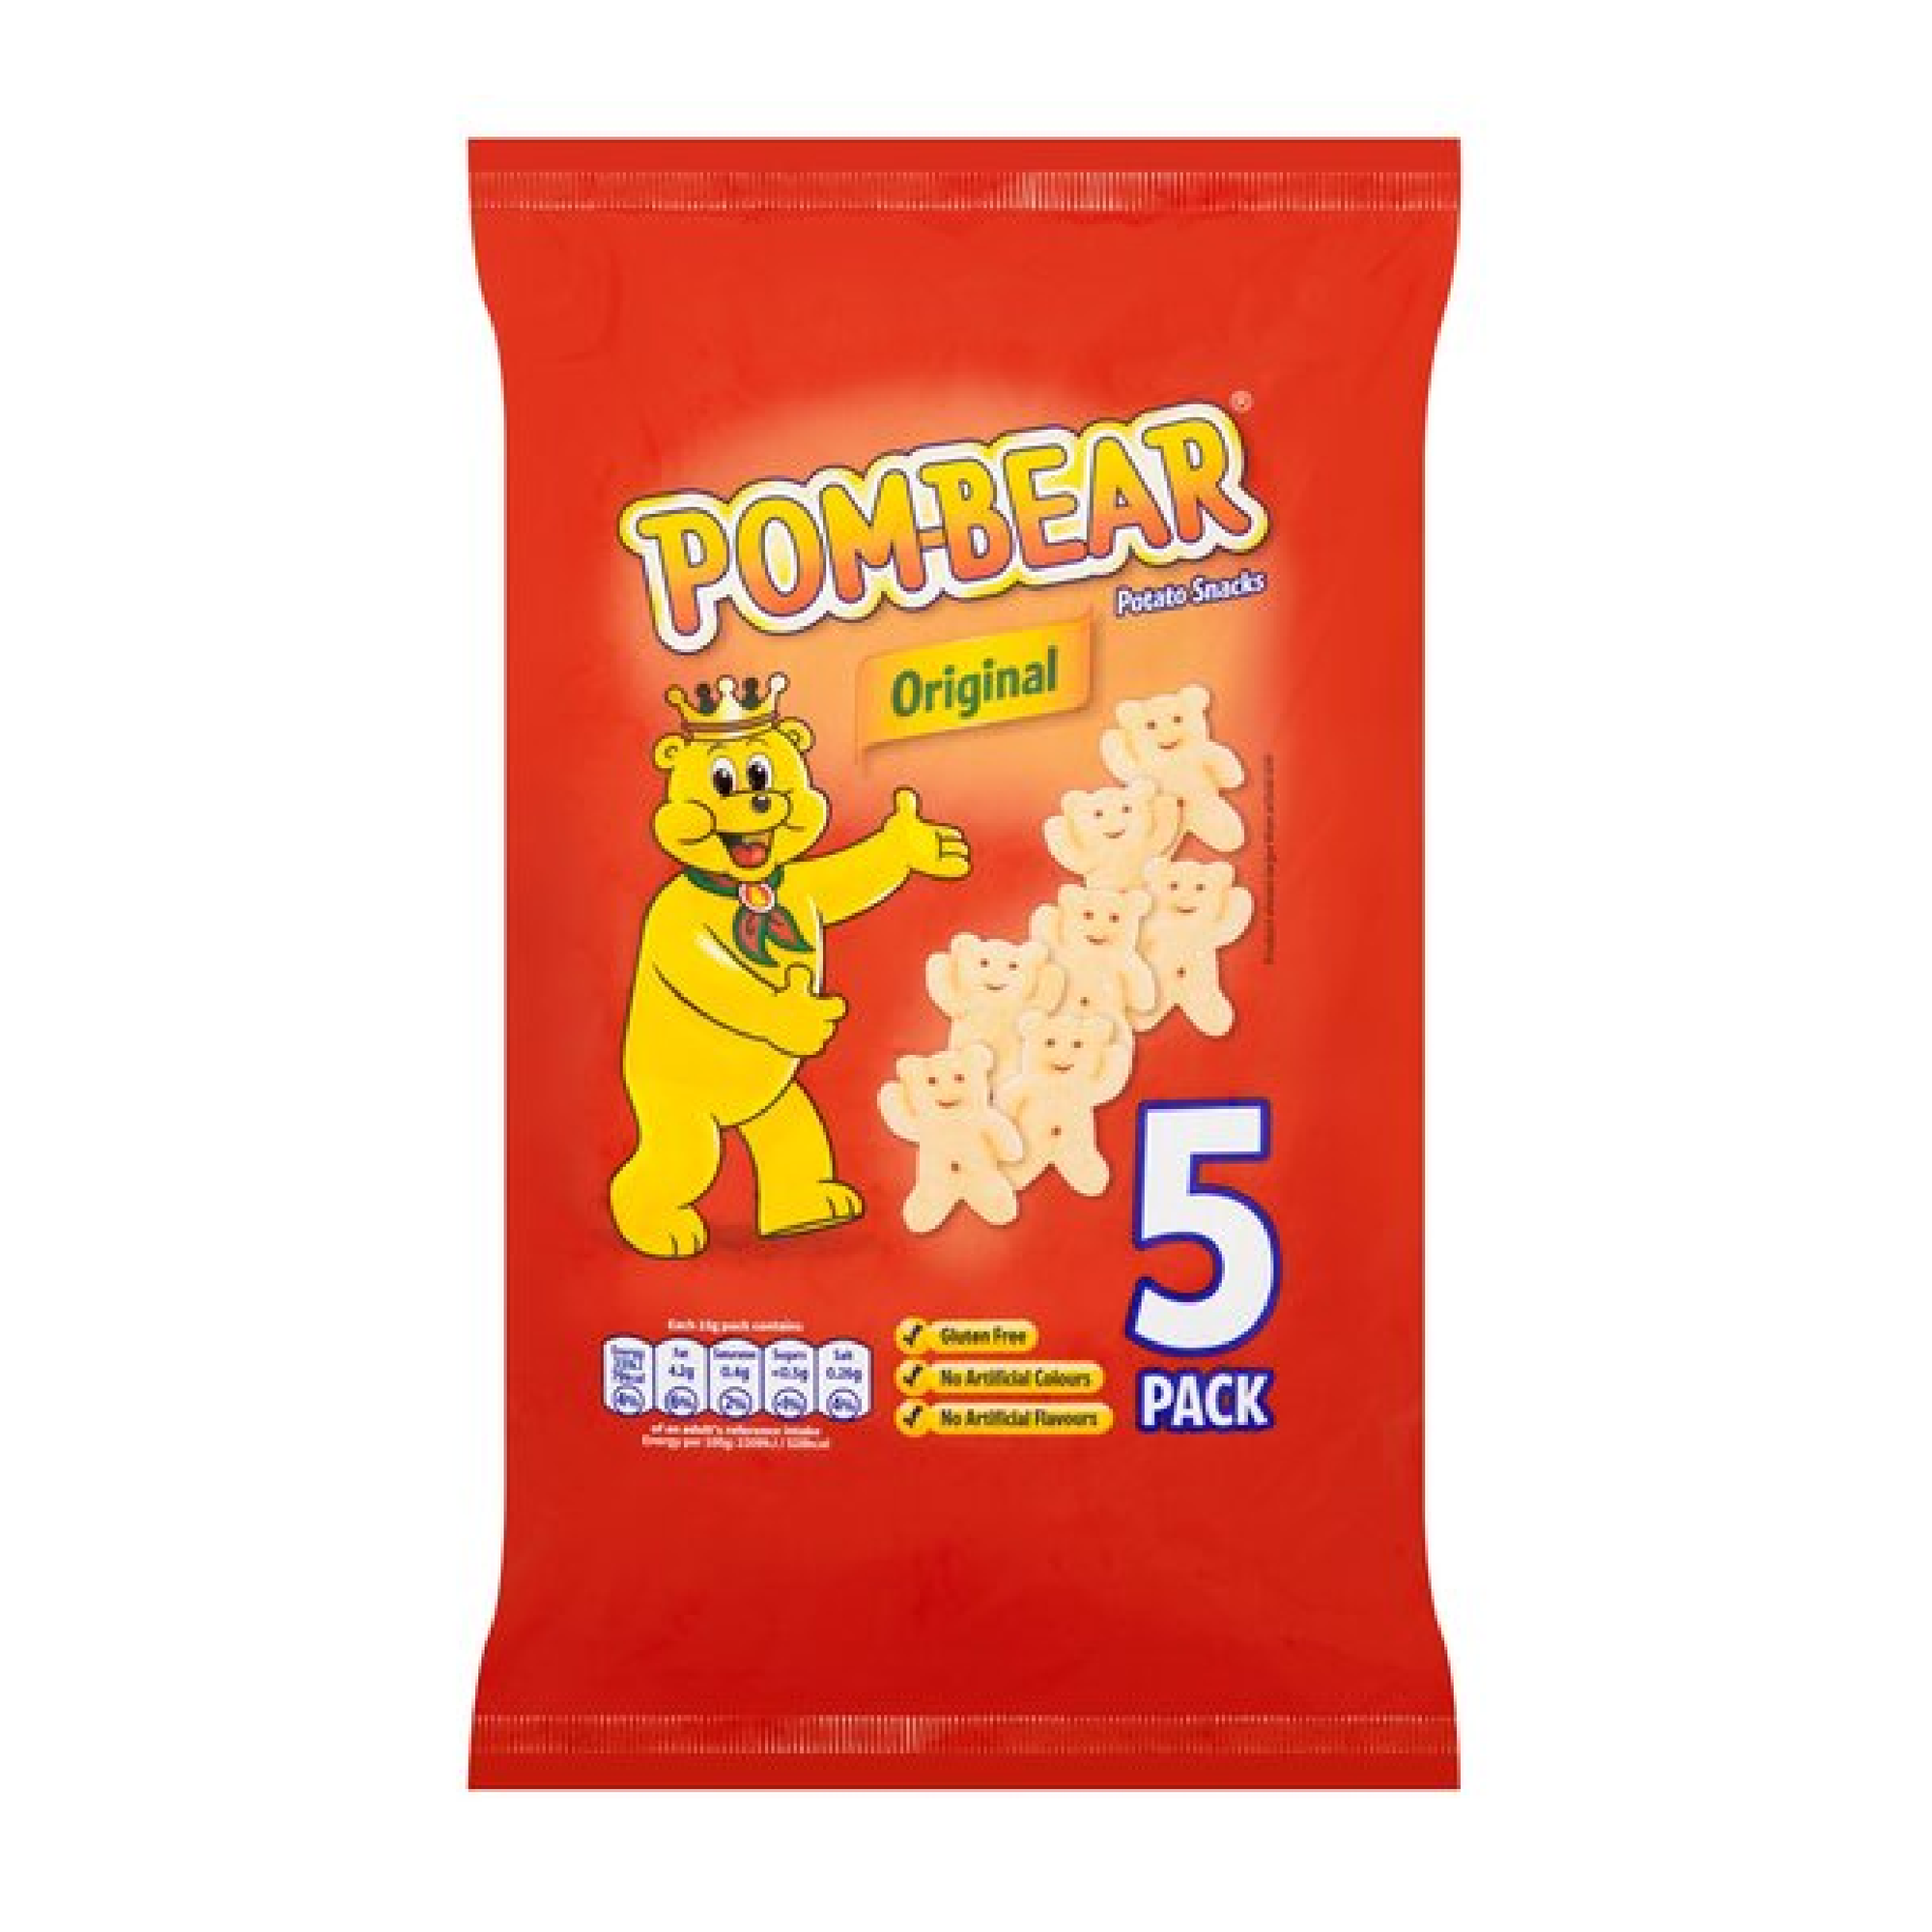 Pom Bear Original 6 x 13g